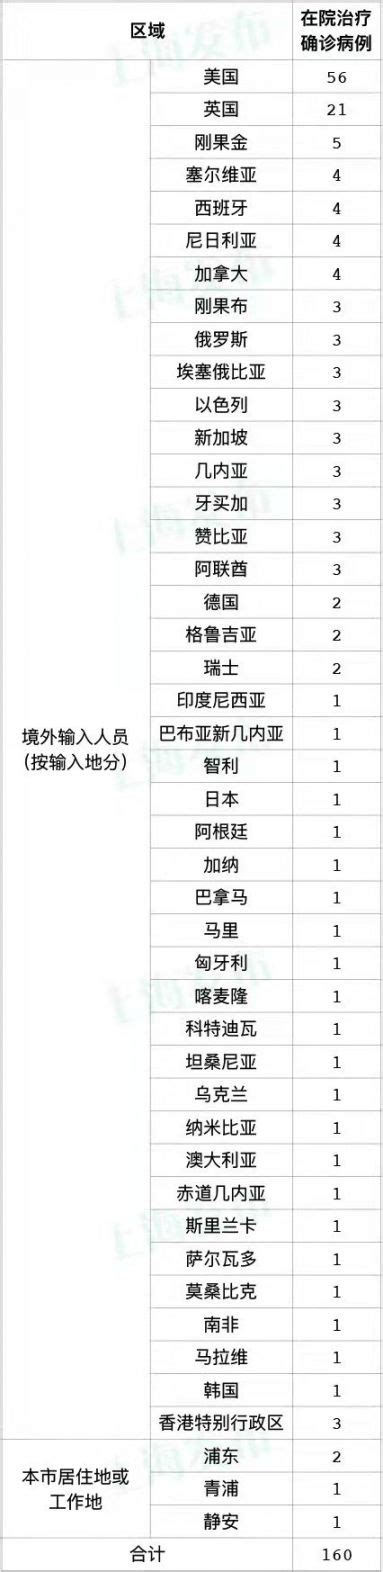 12月28日上海无新增本土确诊 新增11例境外输入- 上海本地宝